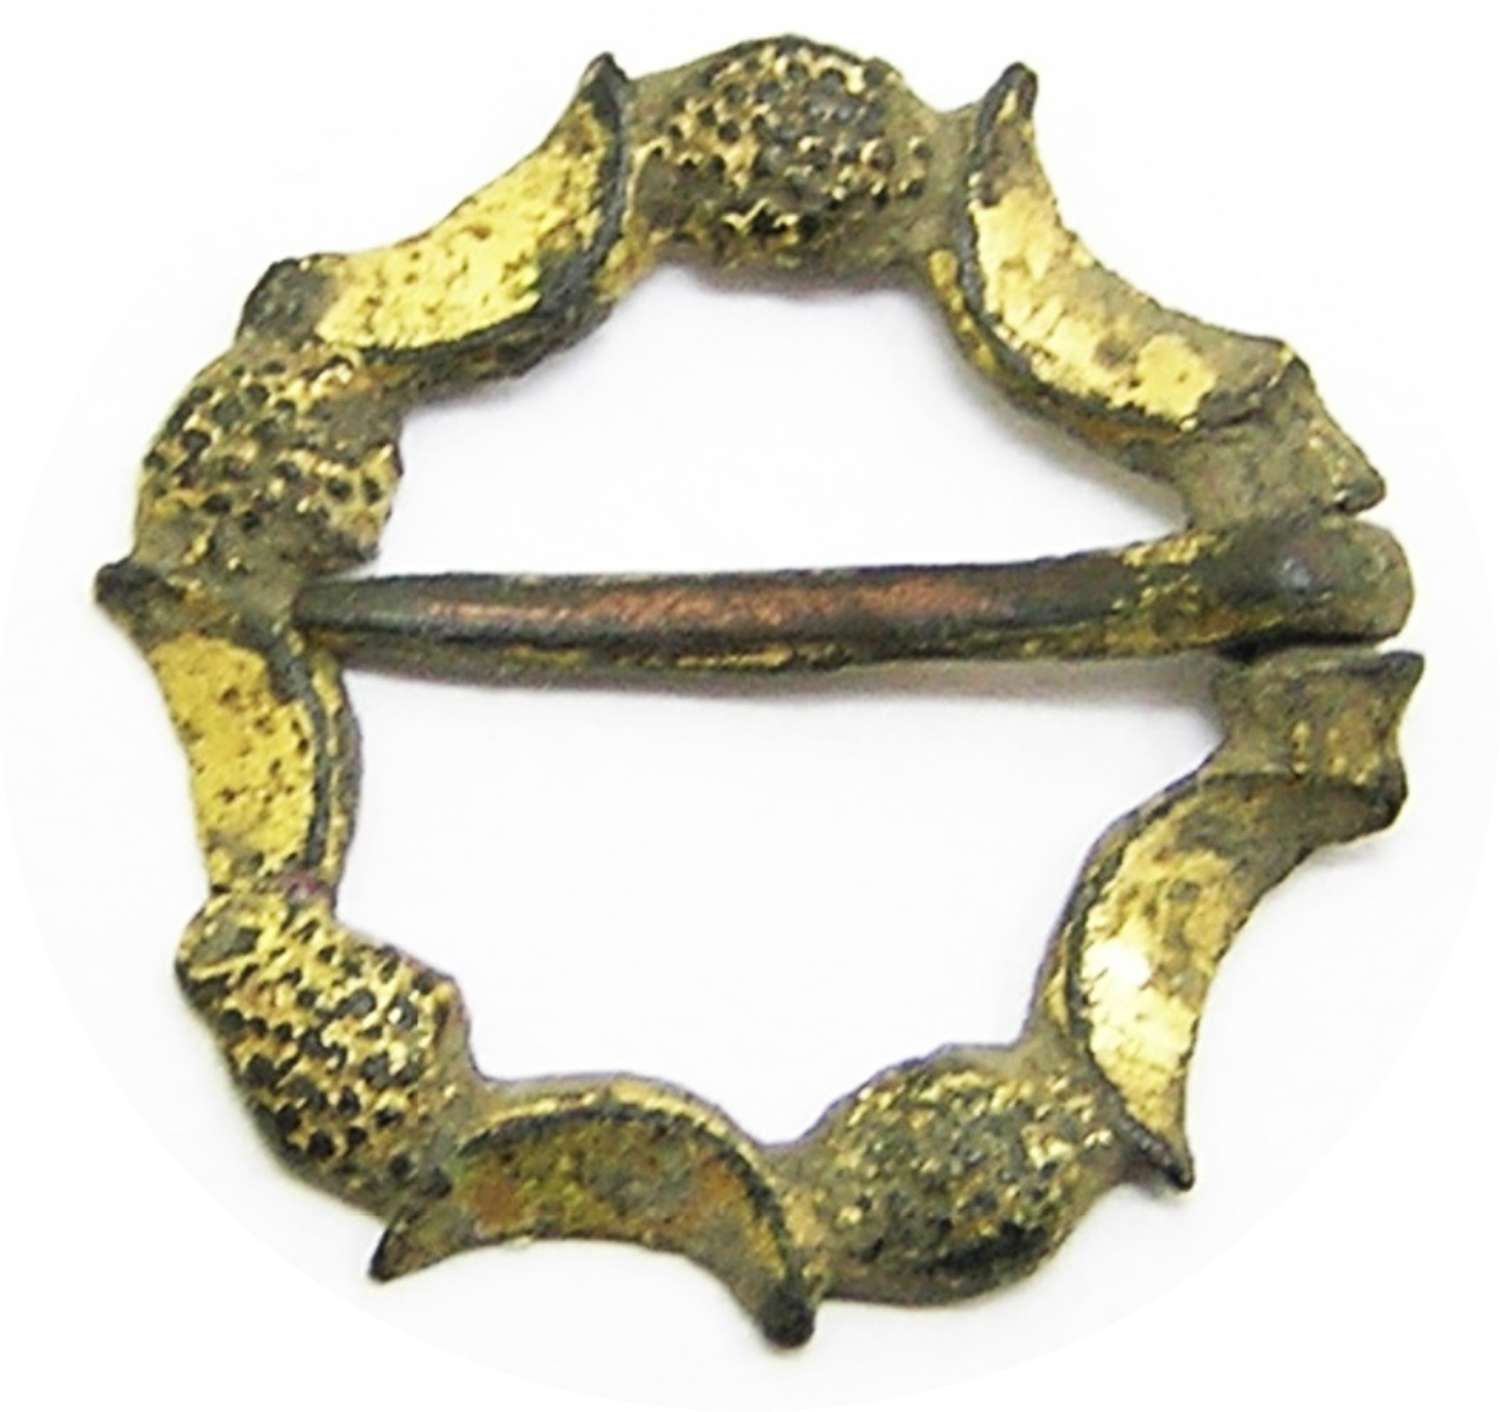 Medieval gilt pentagonal shaped annular brooch